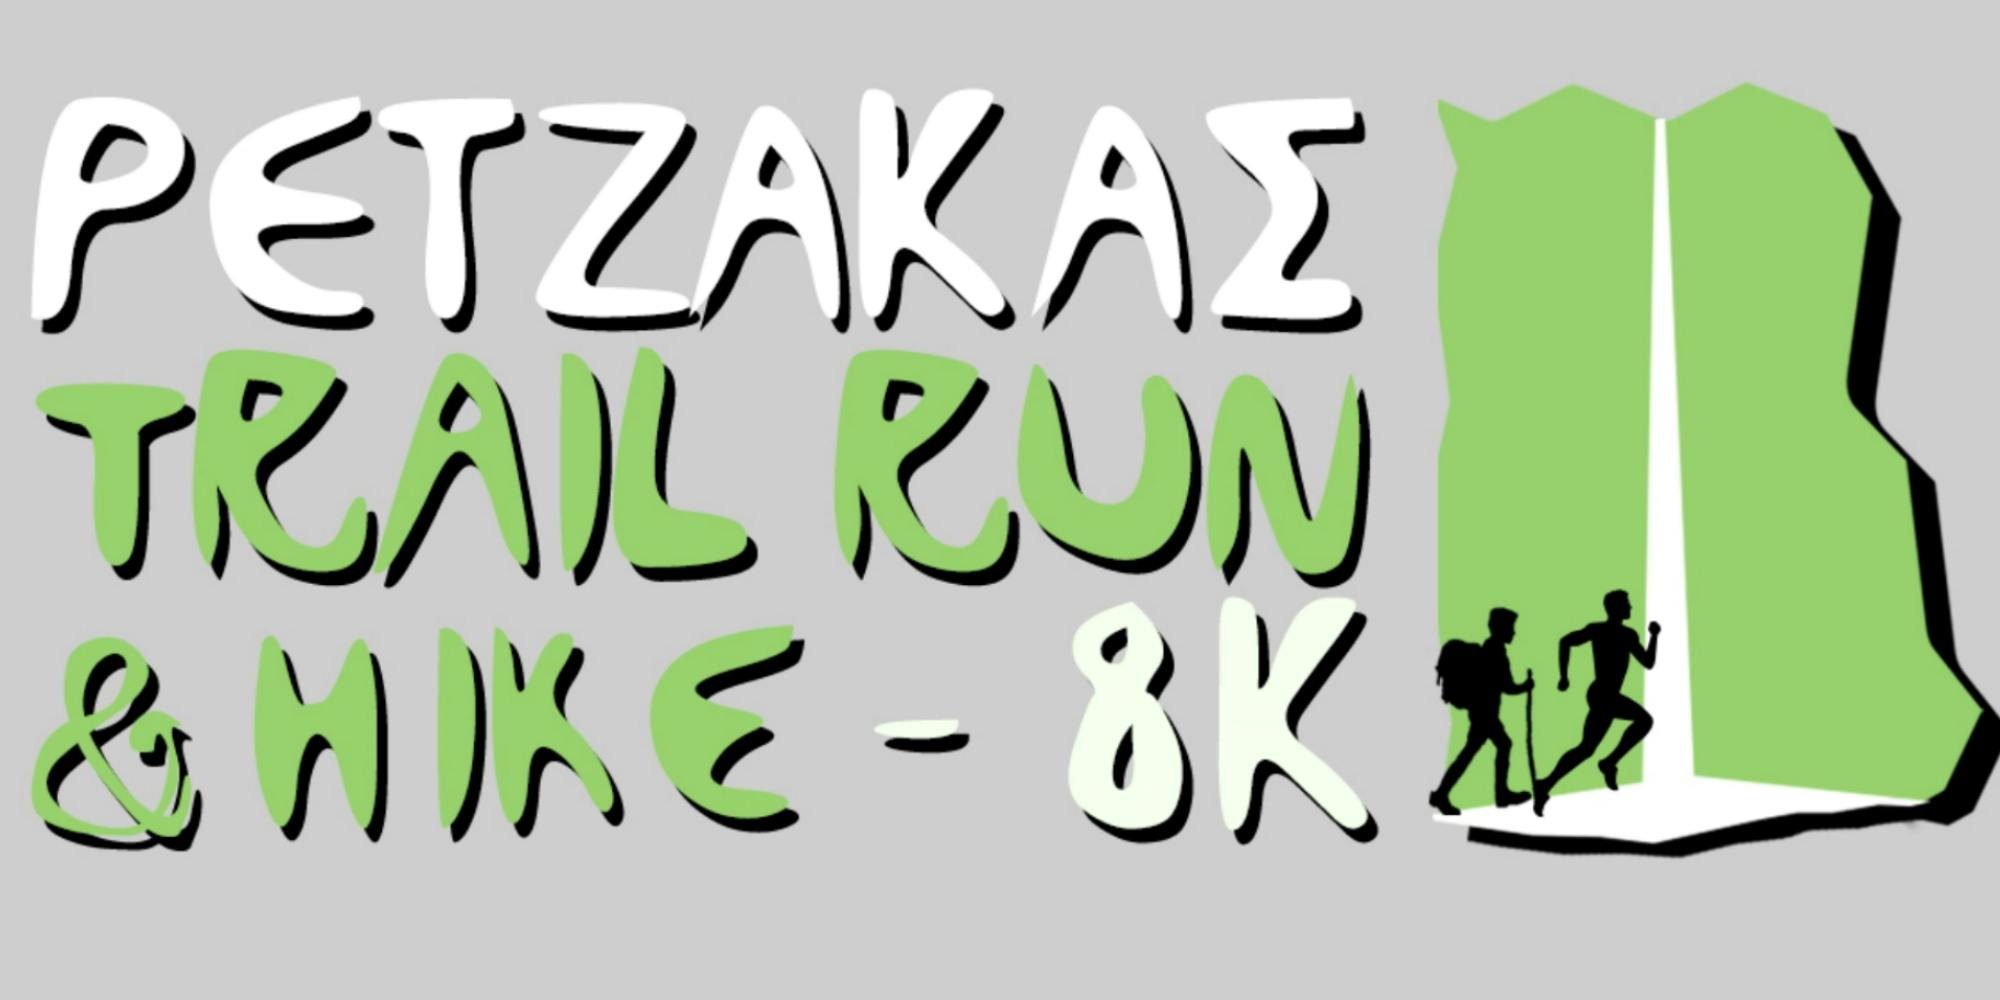 Άνοιξαν οι εγγραφές για το «Ρέτζακας Trail Run & Hike 2022» (Pic)